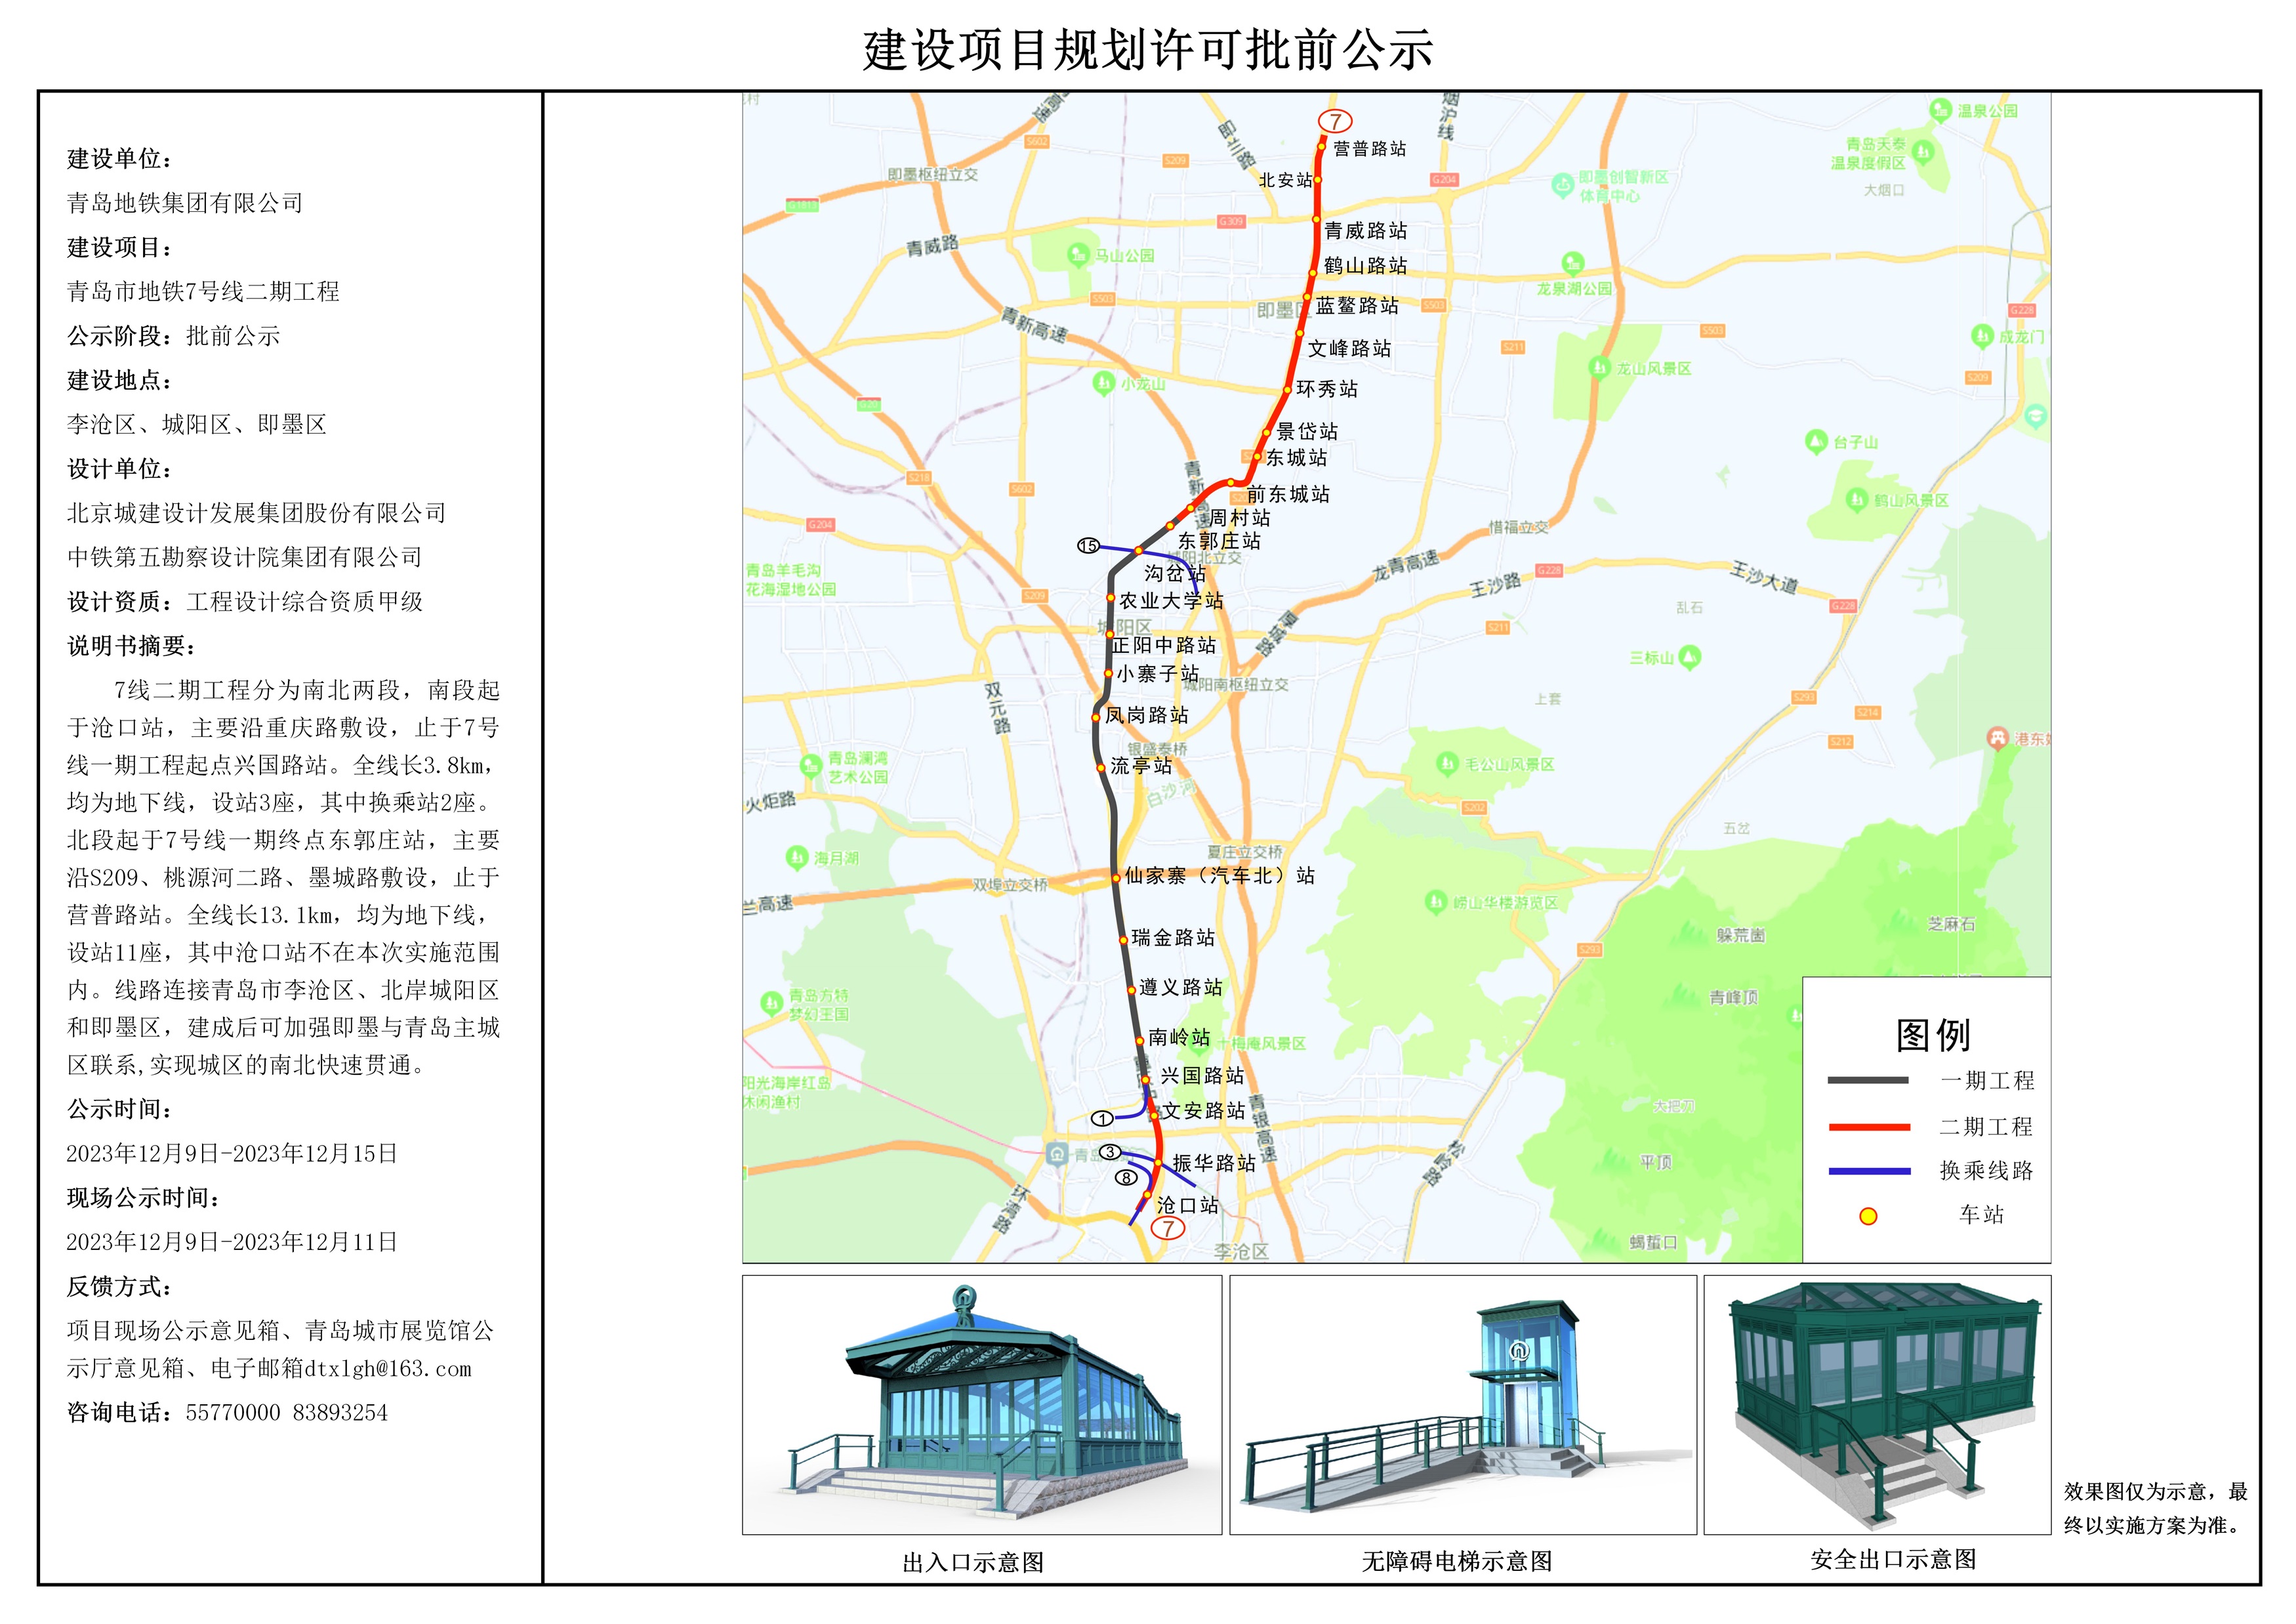 【2023-12-07】青岛市地铁7号线二期工程建设项目规划许可批前公示示例_01(1).jpg